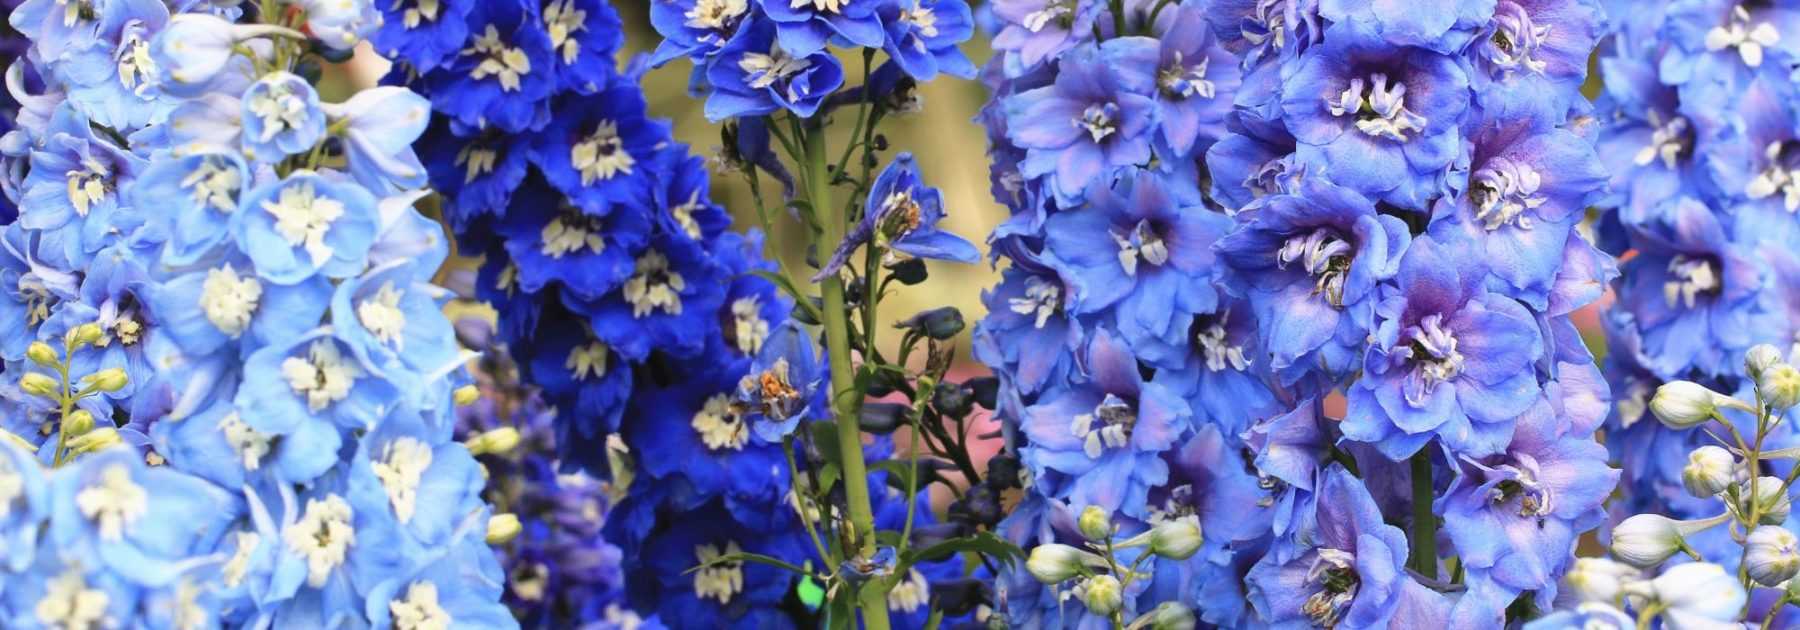 10 plantes vivaces à fleurs bleues qu'il faut avoir dans son jardin